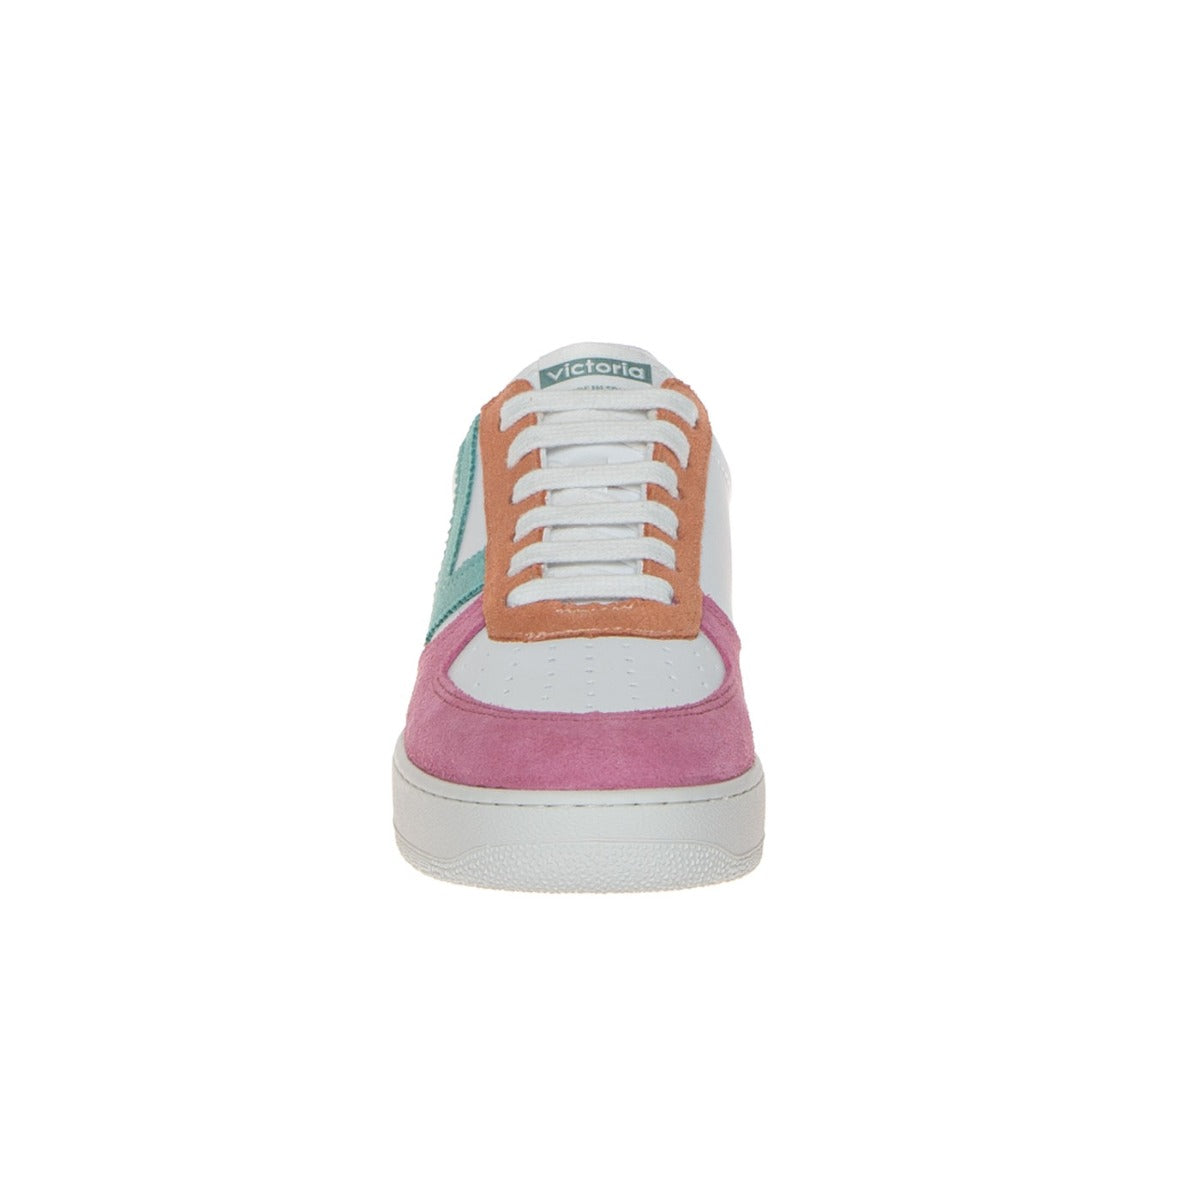 victoria-1258214-sneaker-donna-camoscio-rosa